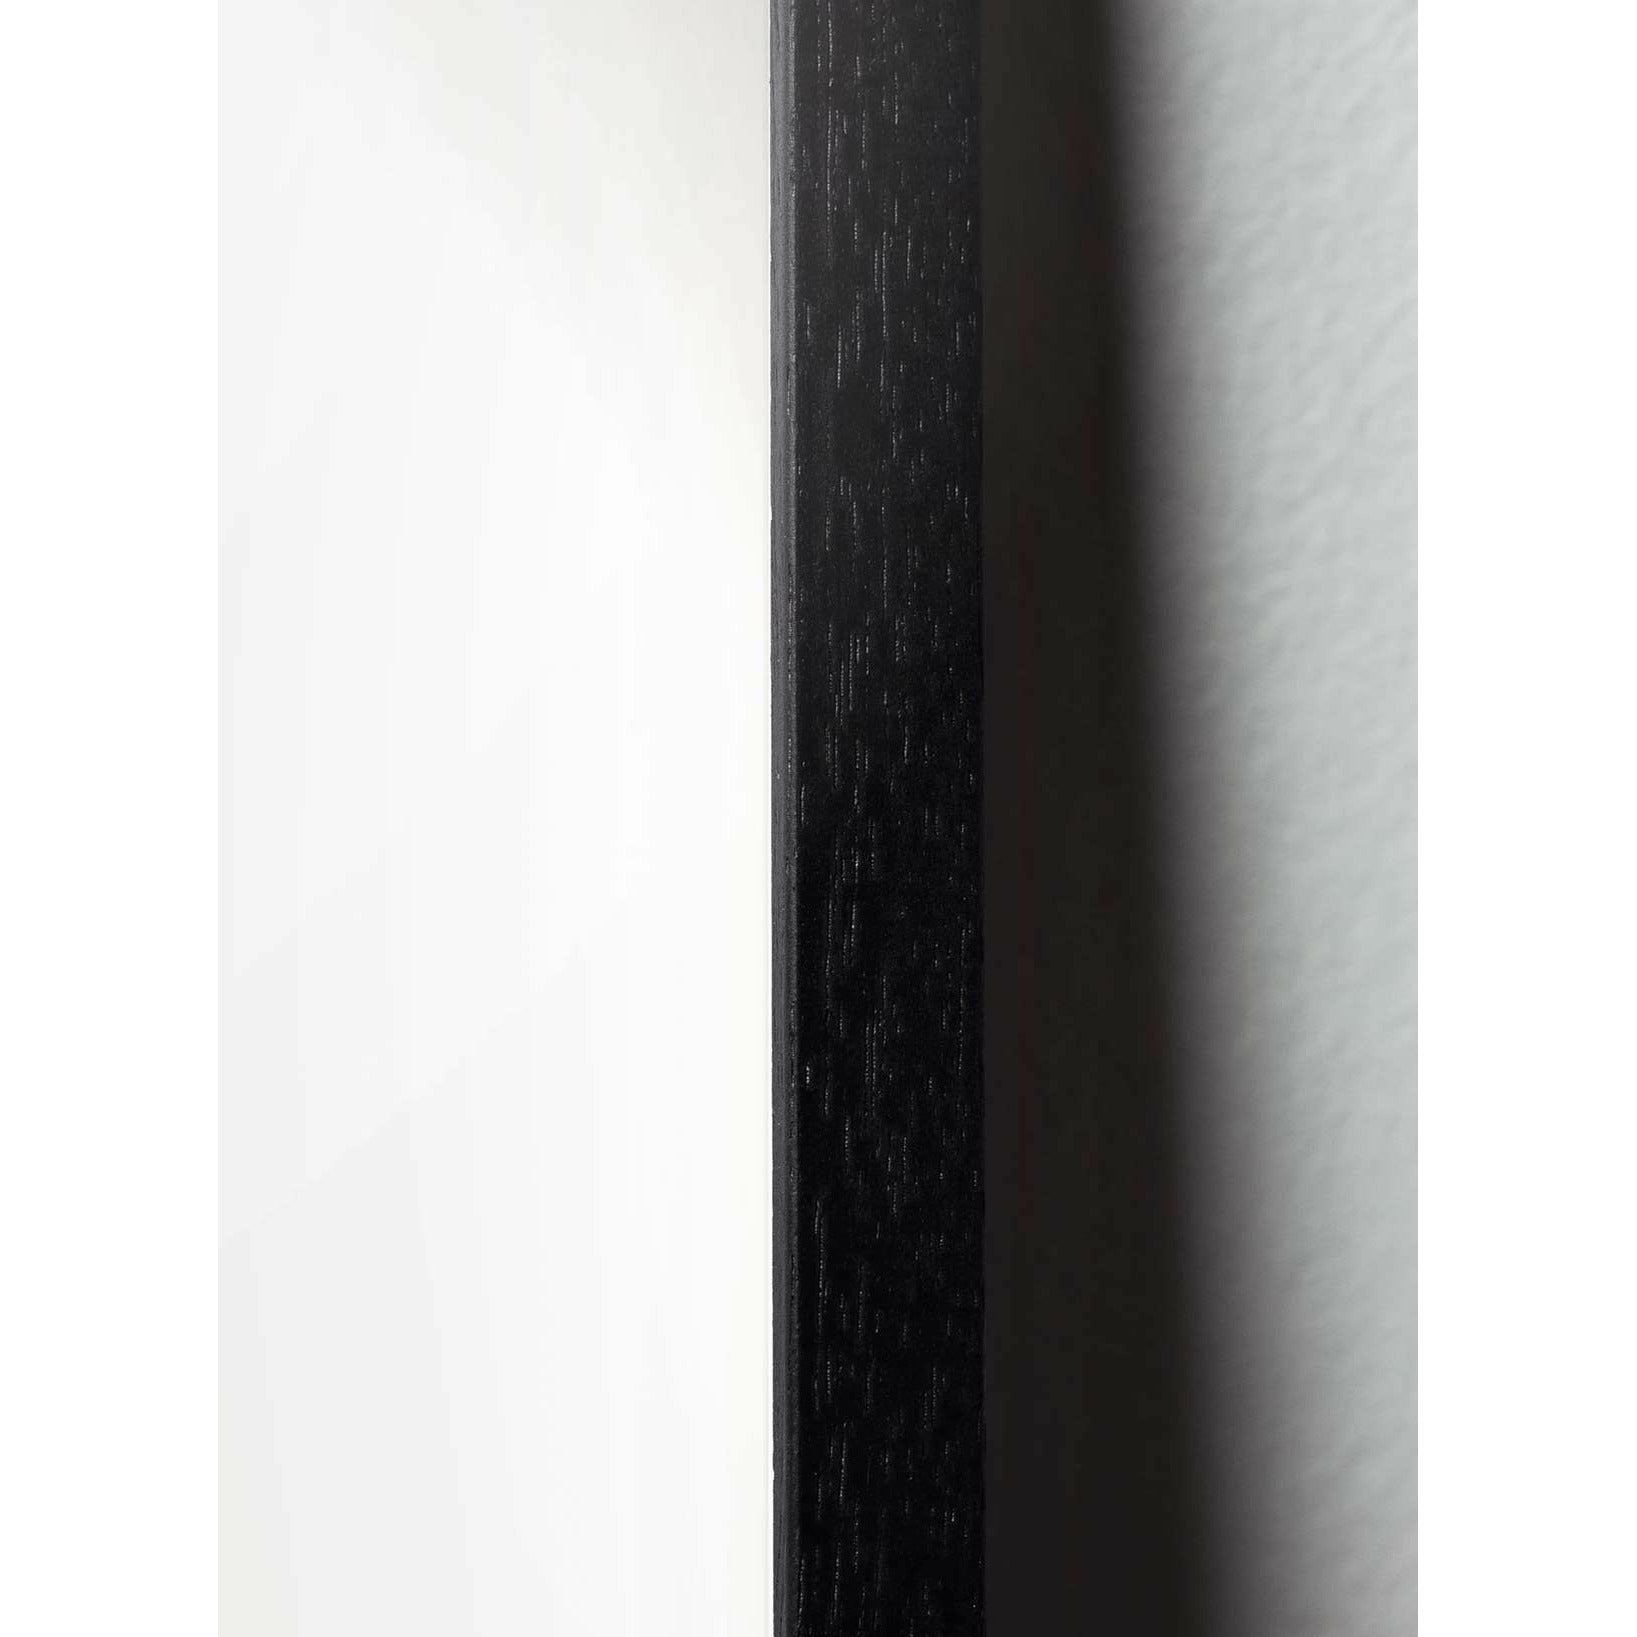 brainchild Egg Classic Poster, frame in zwart gelakt hout 30x40 cm, donkerblauwe achtergrond